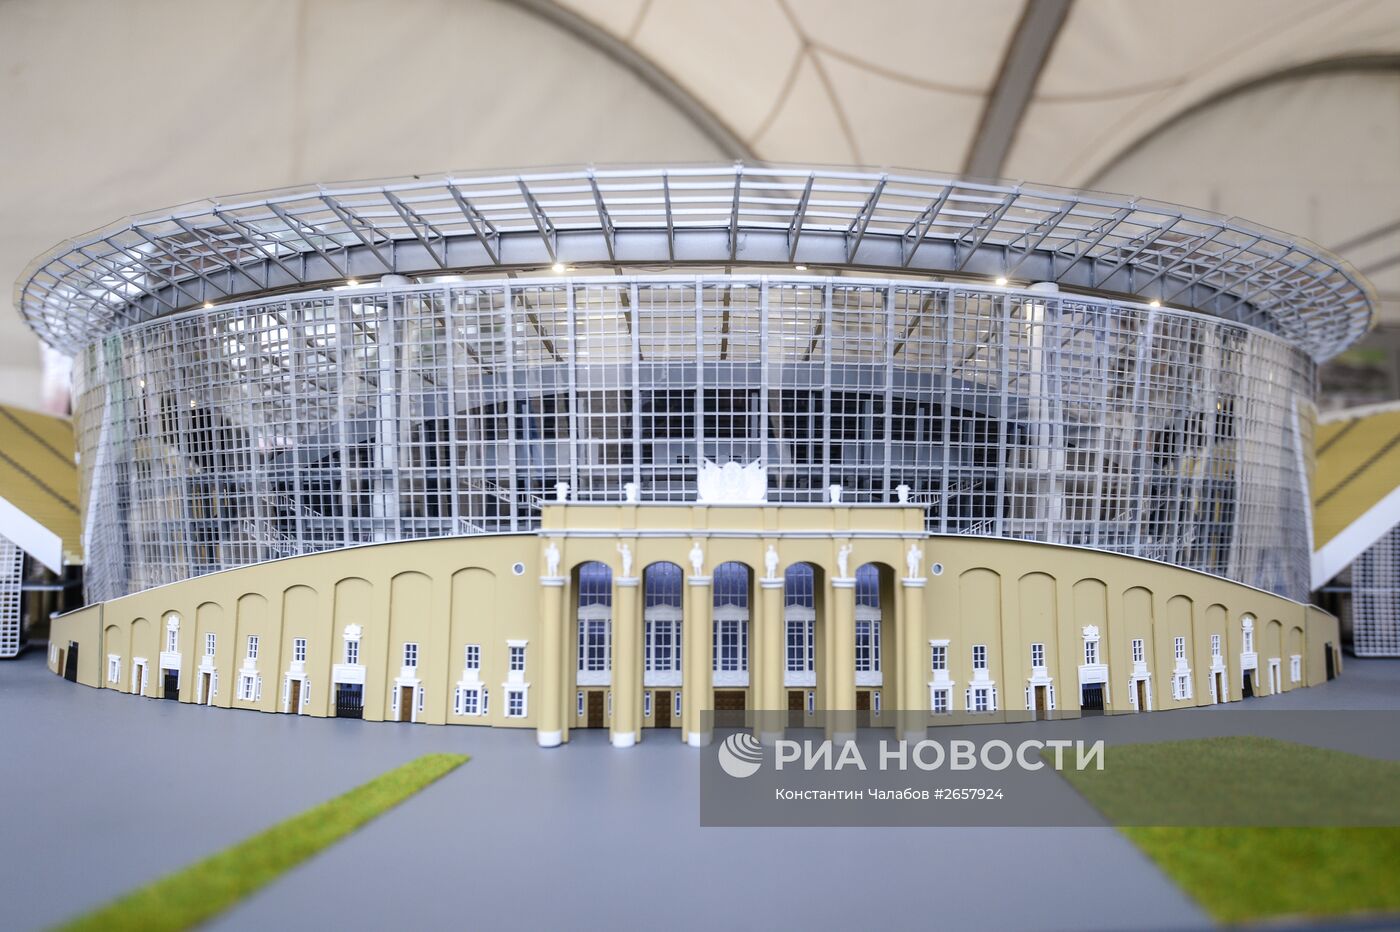 Реконструкция стадиона "Центральный" к ЧМ-2018